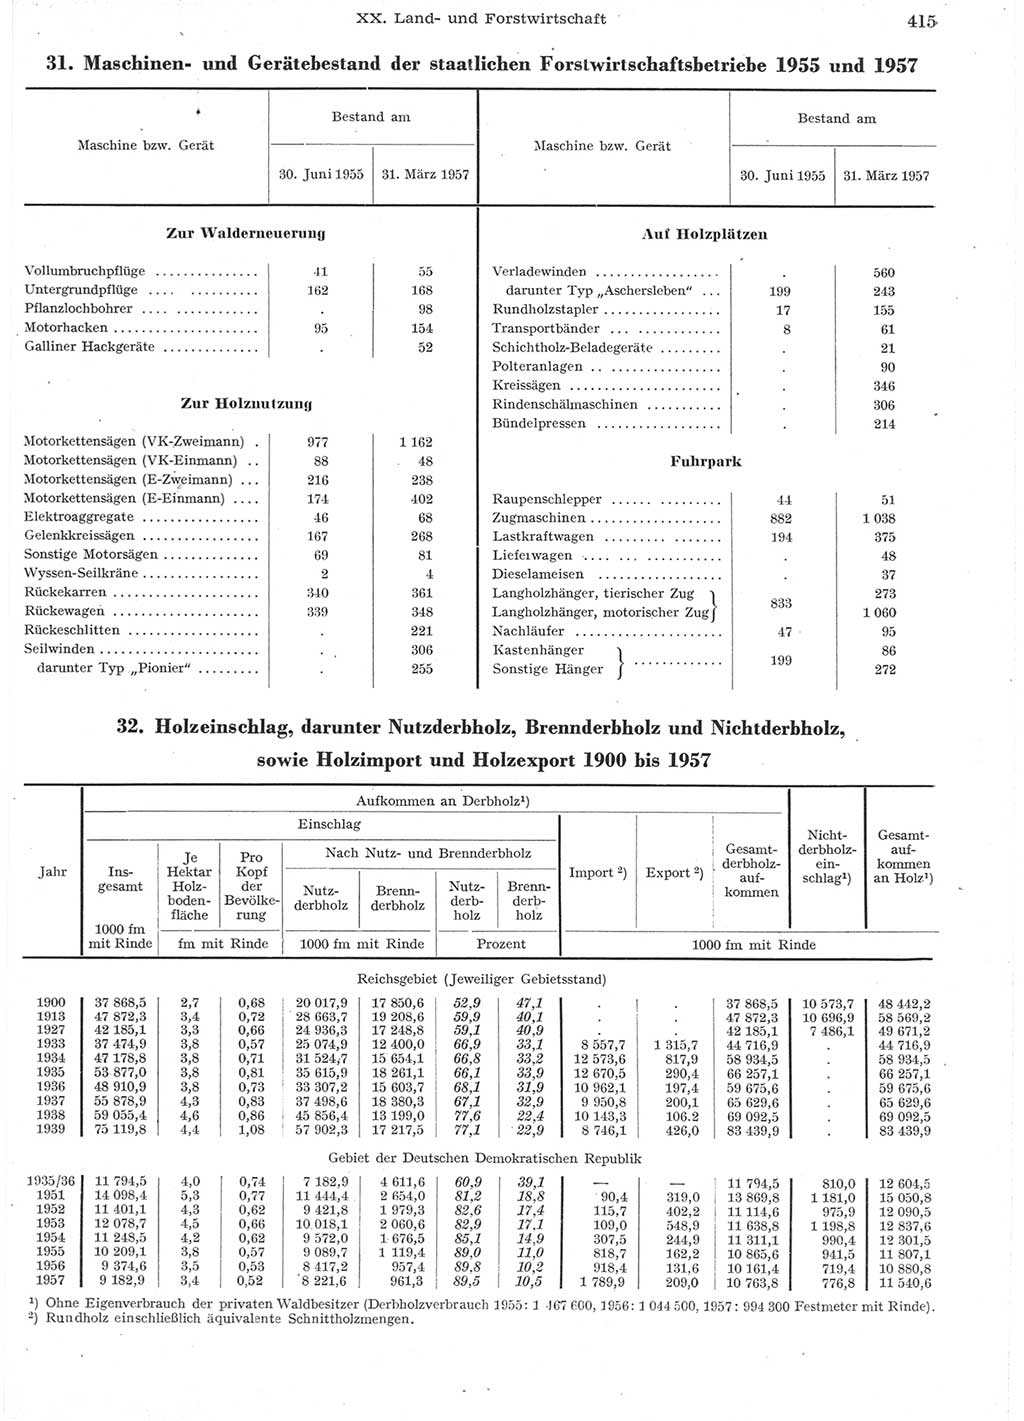 Statistisches Jahrbuch der Deutschen Demokratischen Republik (DDR) 1957, Seite 415 (Stat. Jb. DDR 1957, S. 415)